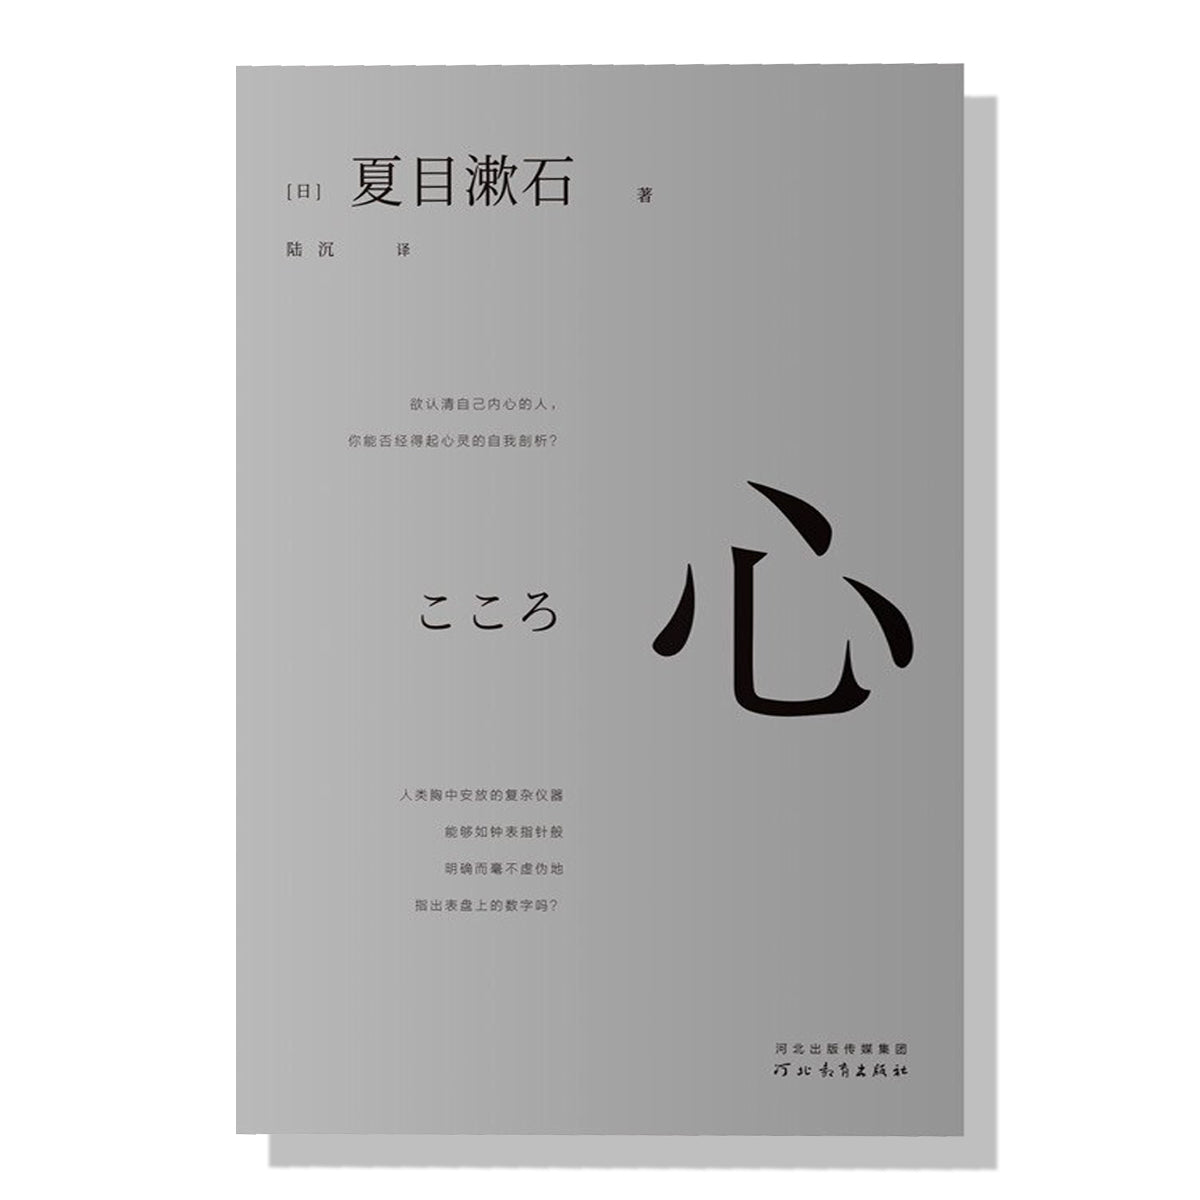 多伦多买书-加拿大购书-日本文学-夏目漱石-心